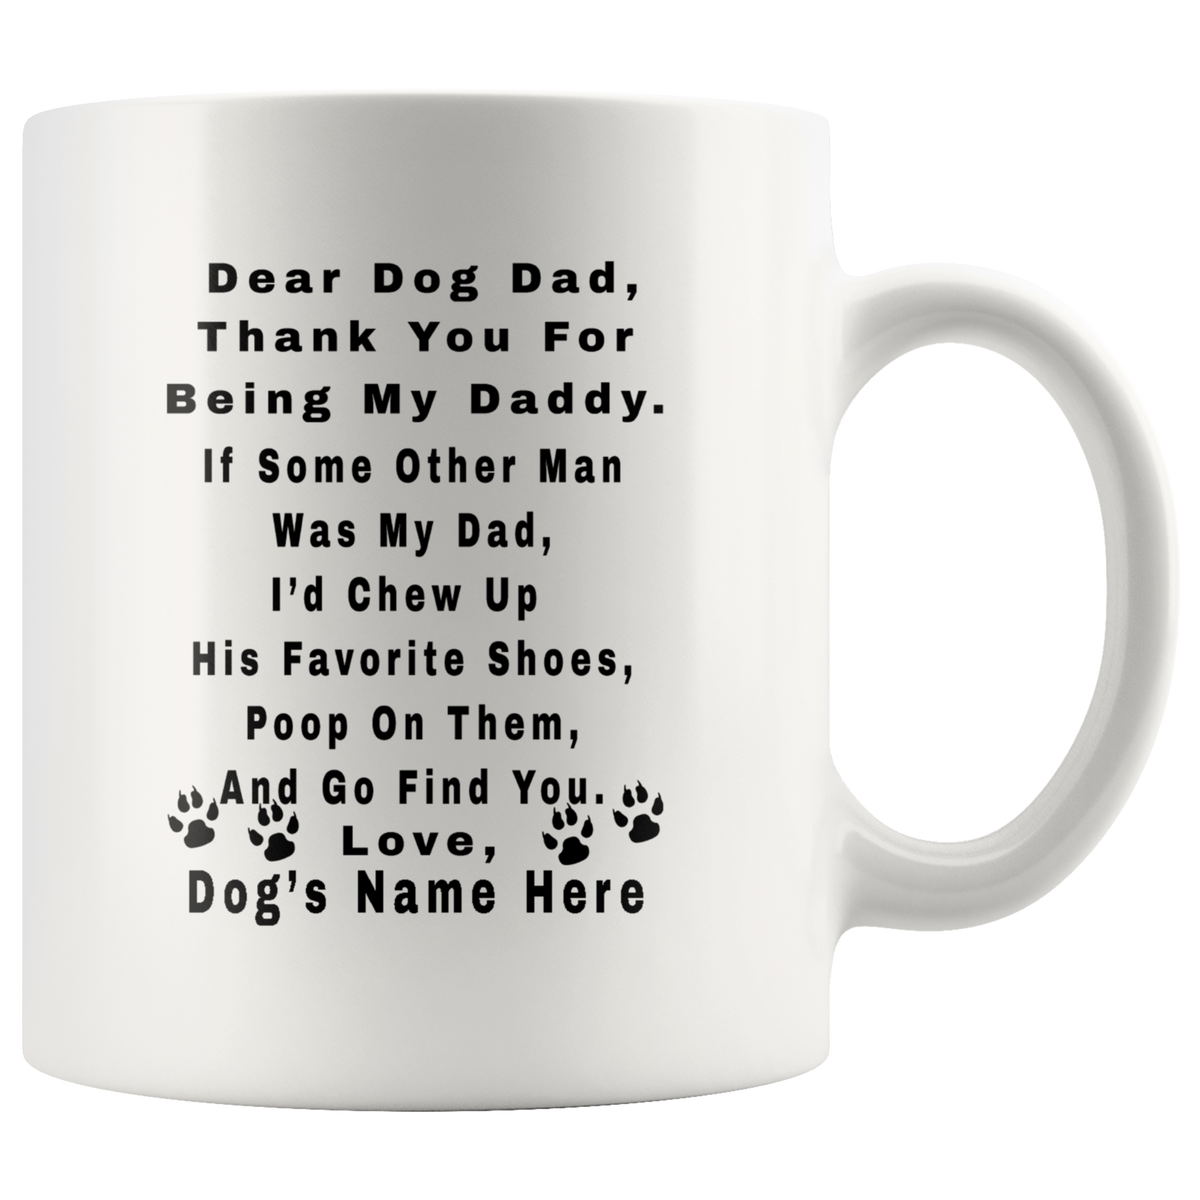 Funny Personalized Dog Dad Mug - Thank You For Being My Daddy Coffee Mug 11oz